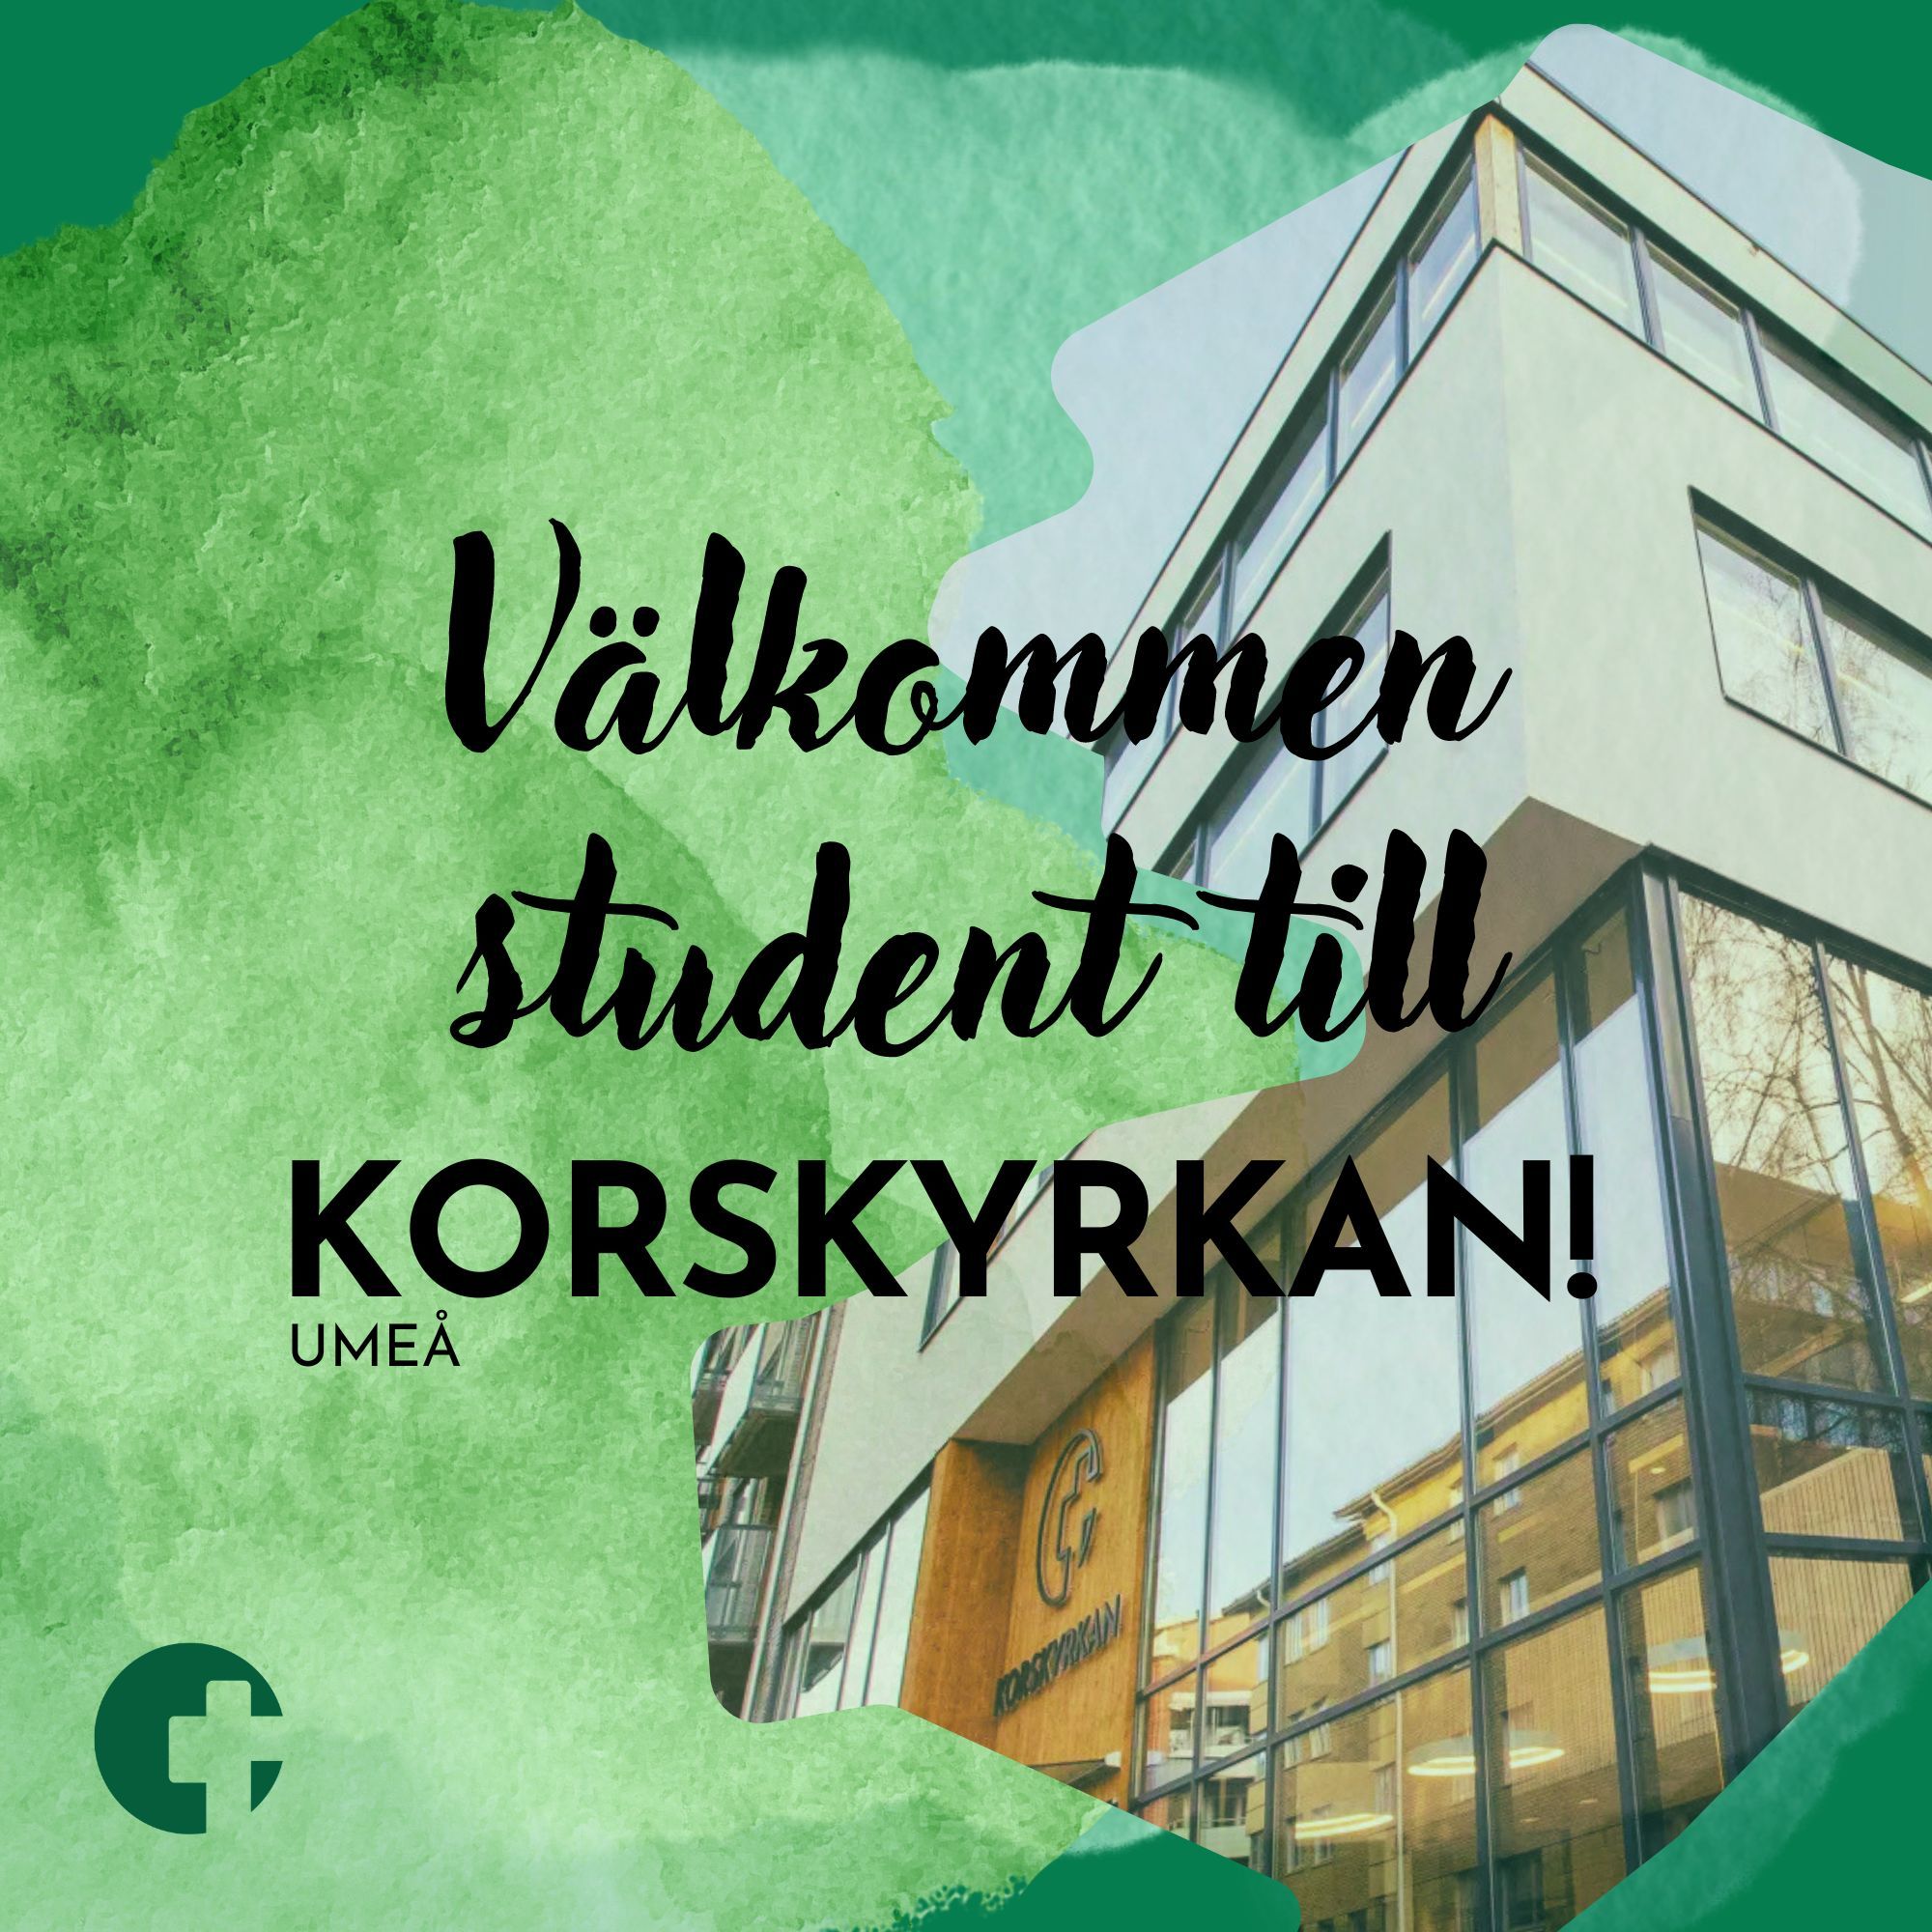 Välkommen student till Korskyrkan Umeå